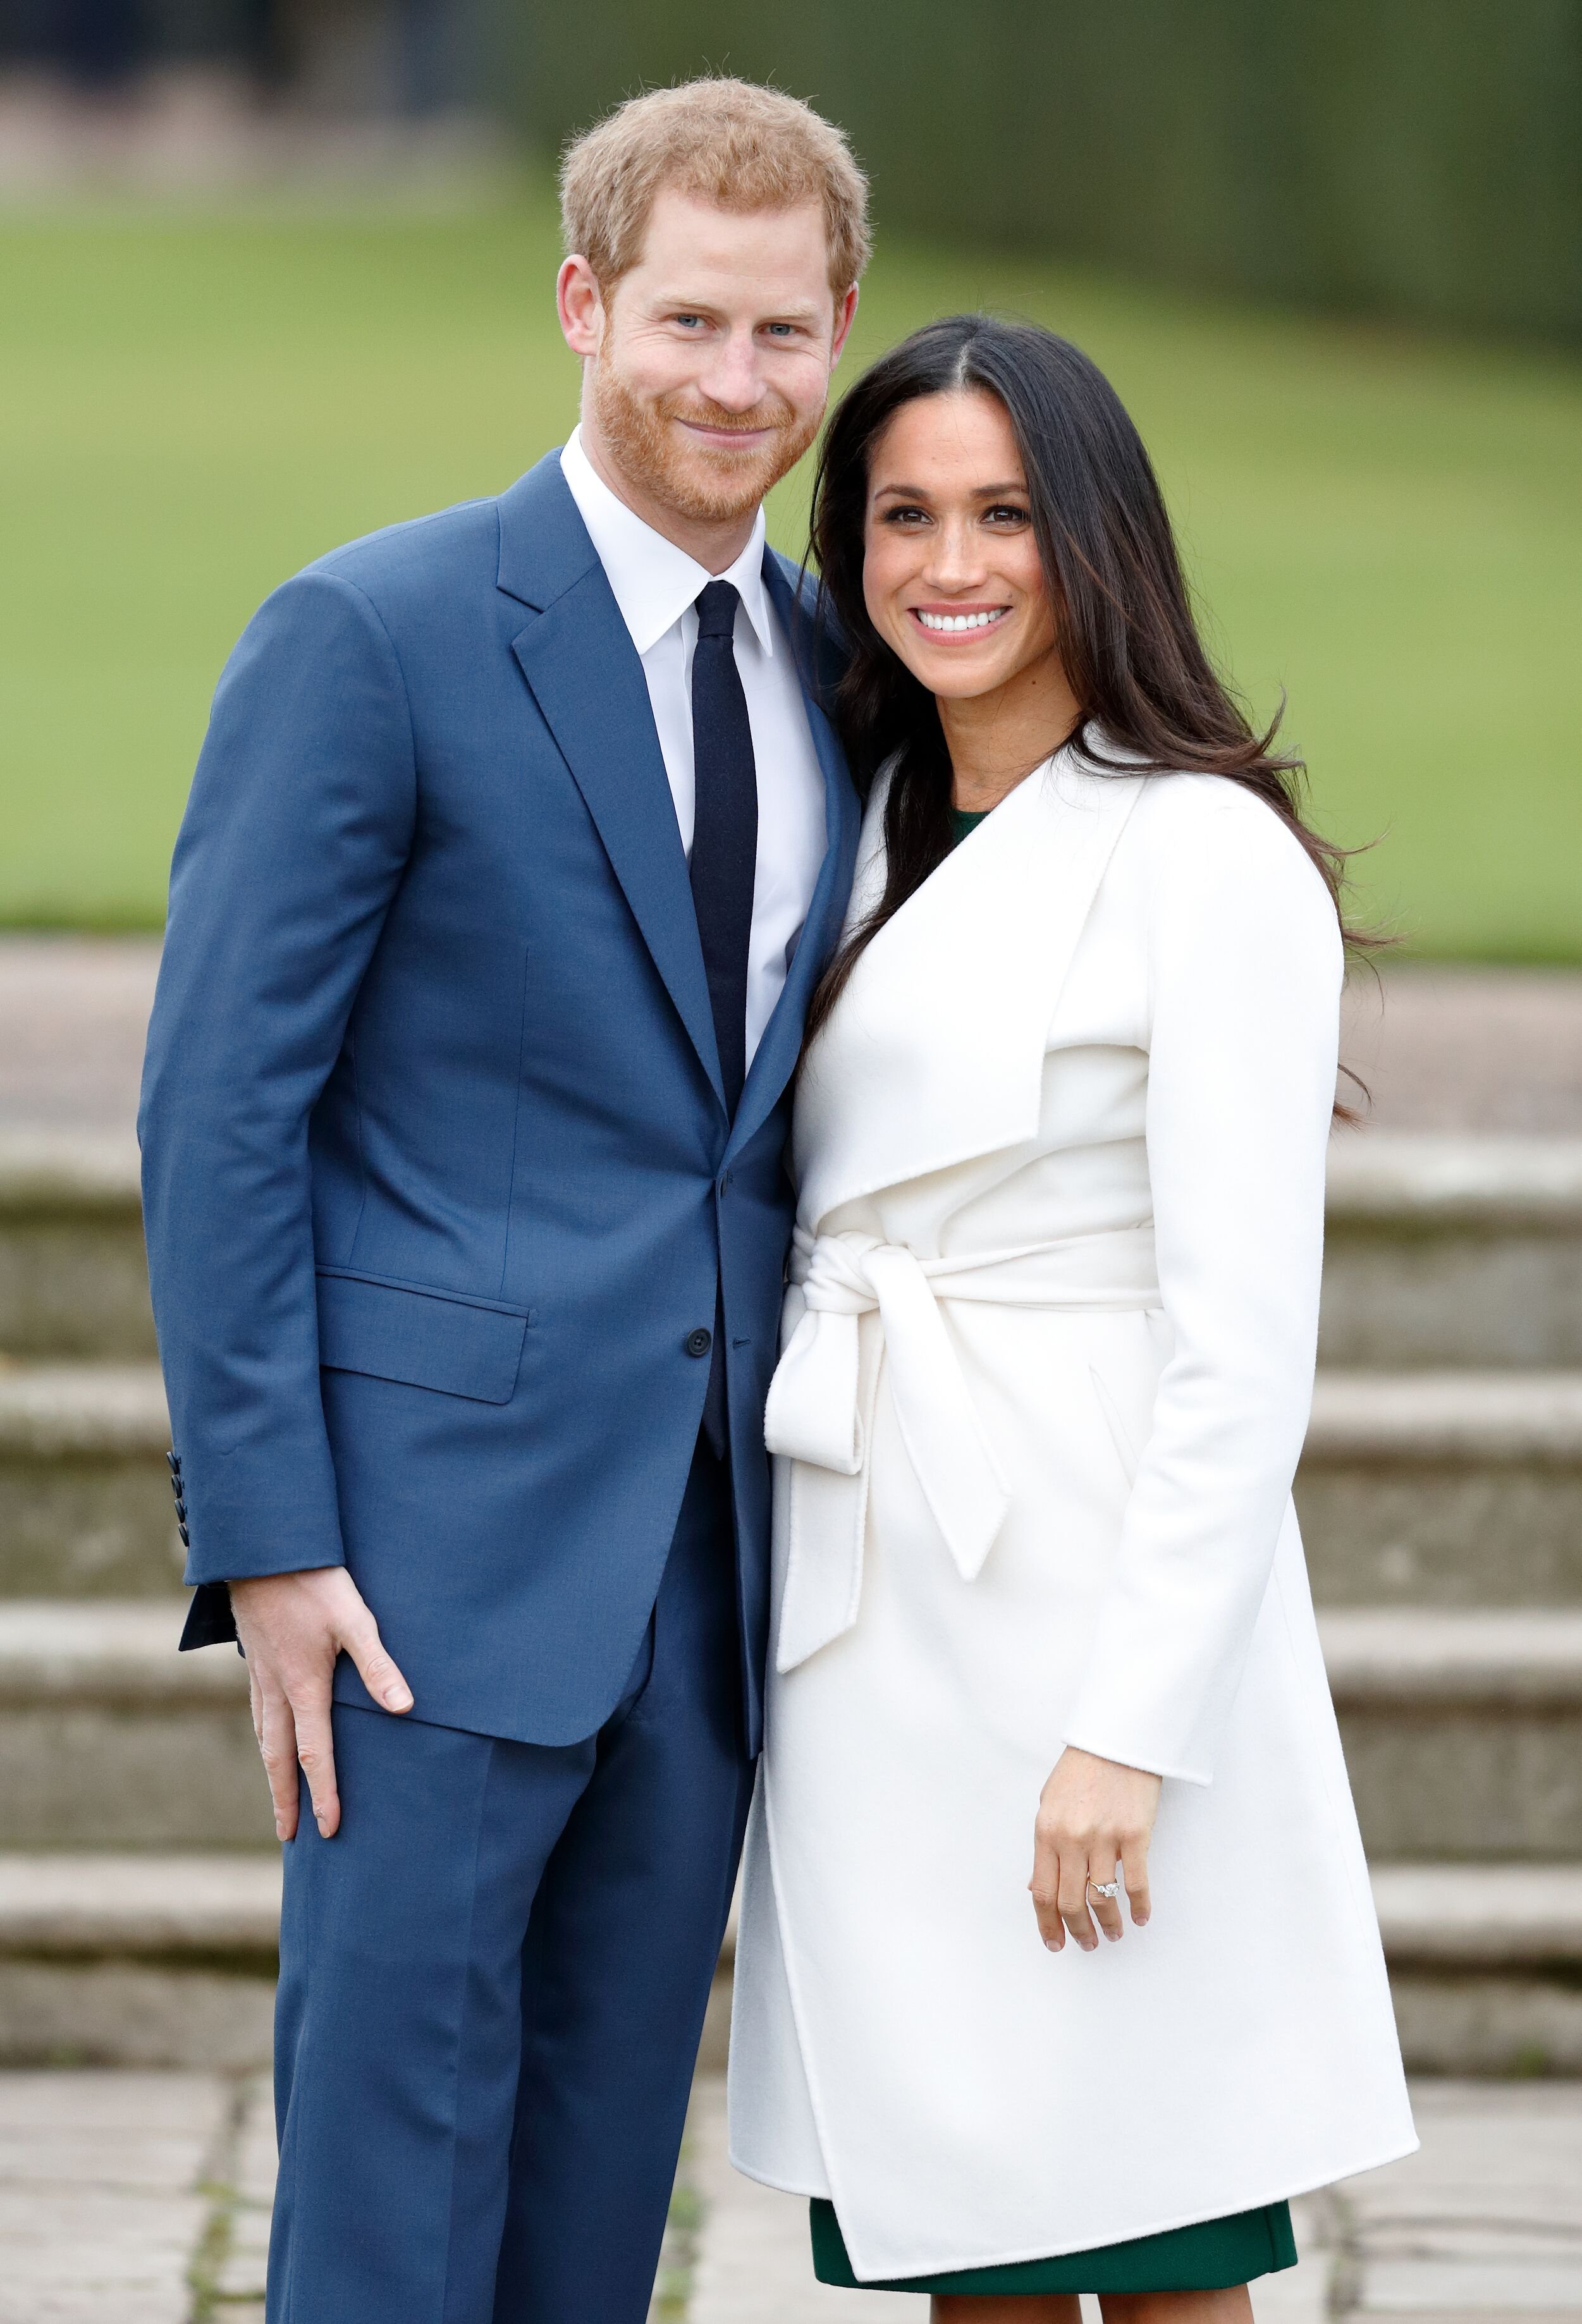 Le prince Harry et Meghan Markle assistent à un appel photo officiel pour annoncer leurs fiançailles au Sunken Gardens, Kensington Palace le 27 novembre 2017 à Londres, Angleterre | Photo : Getty Images